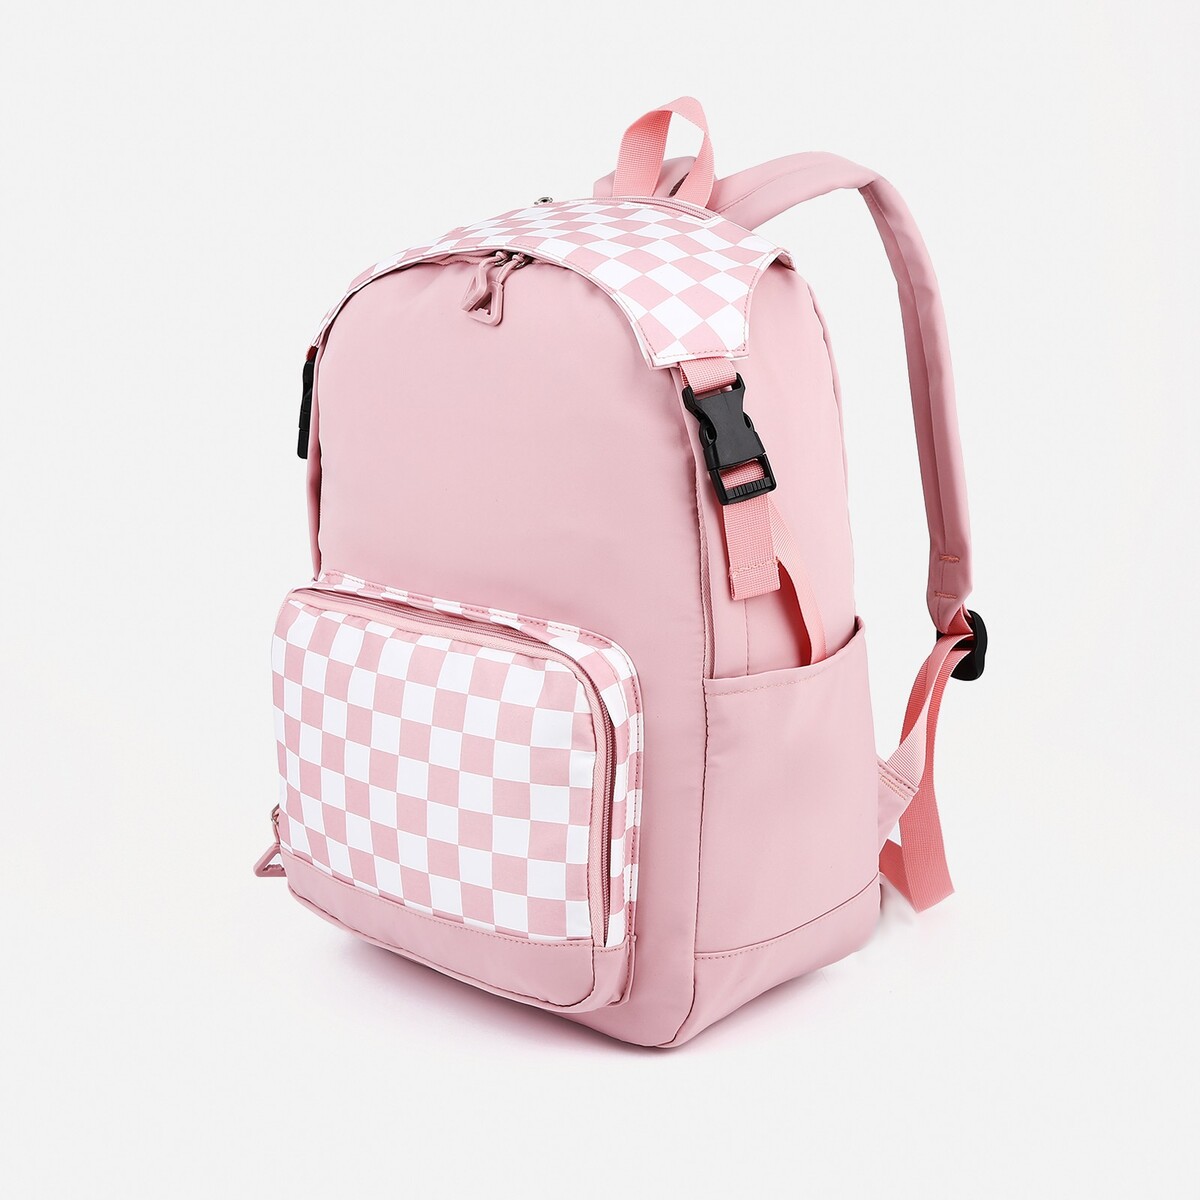 Рюкзак школьный из текстиля, 5 карманов, цвет розовый рюкзак школьный из текстиля 5 карманов розовый